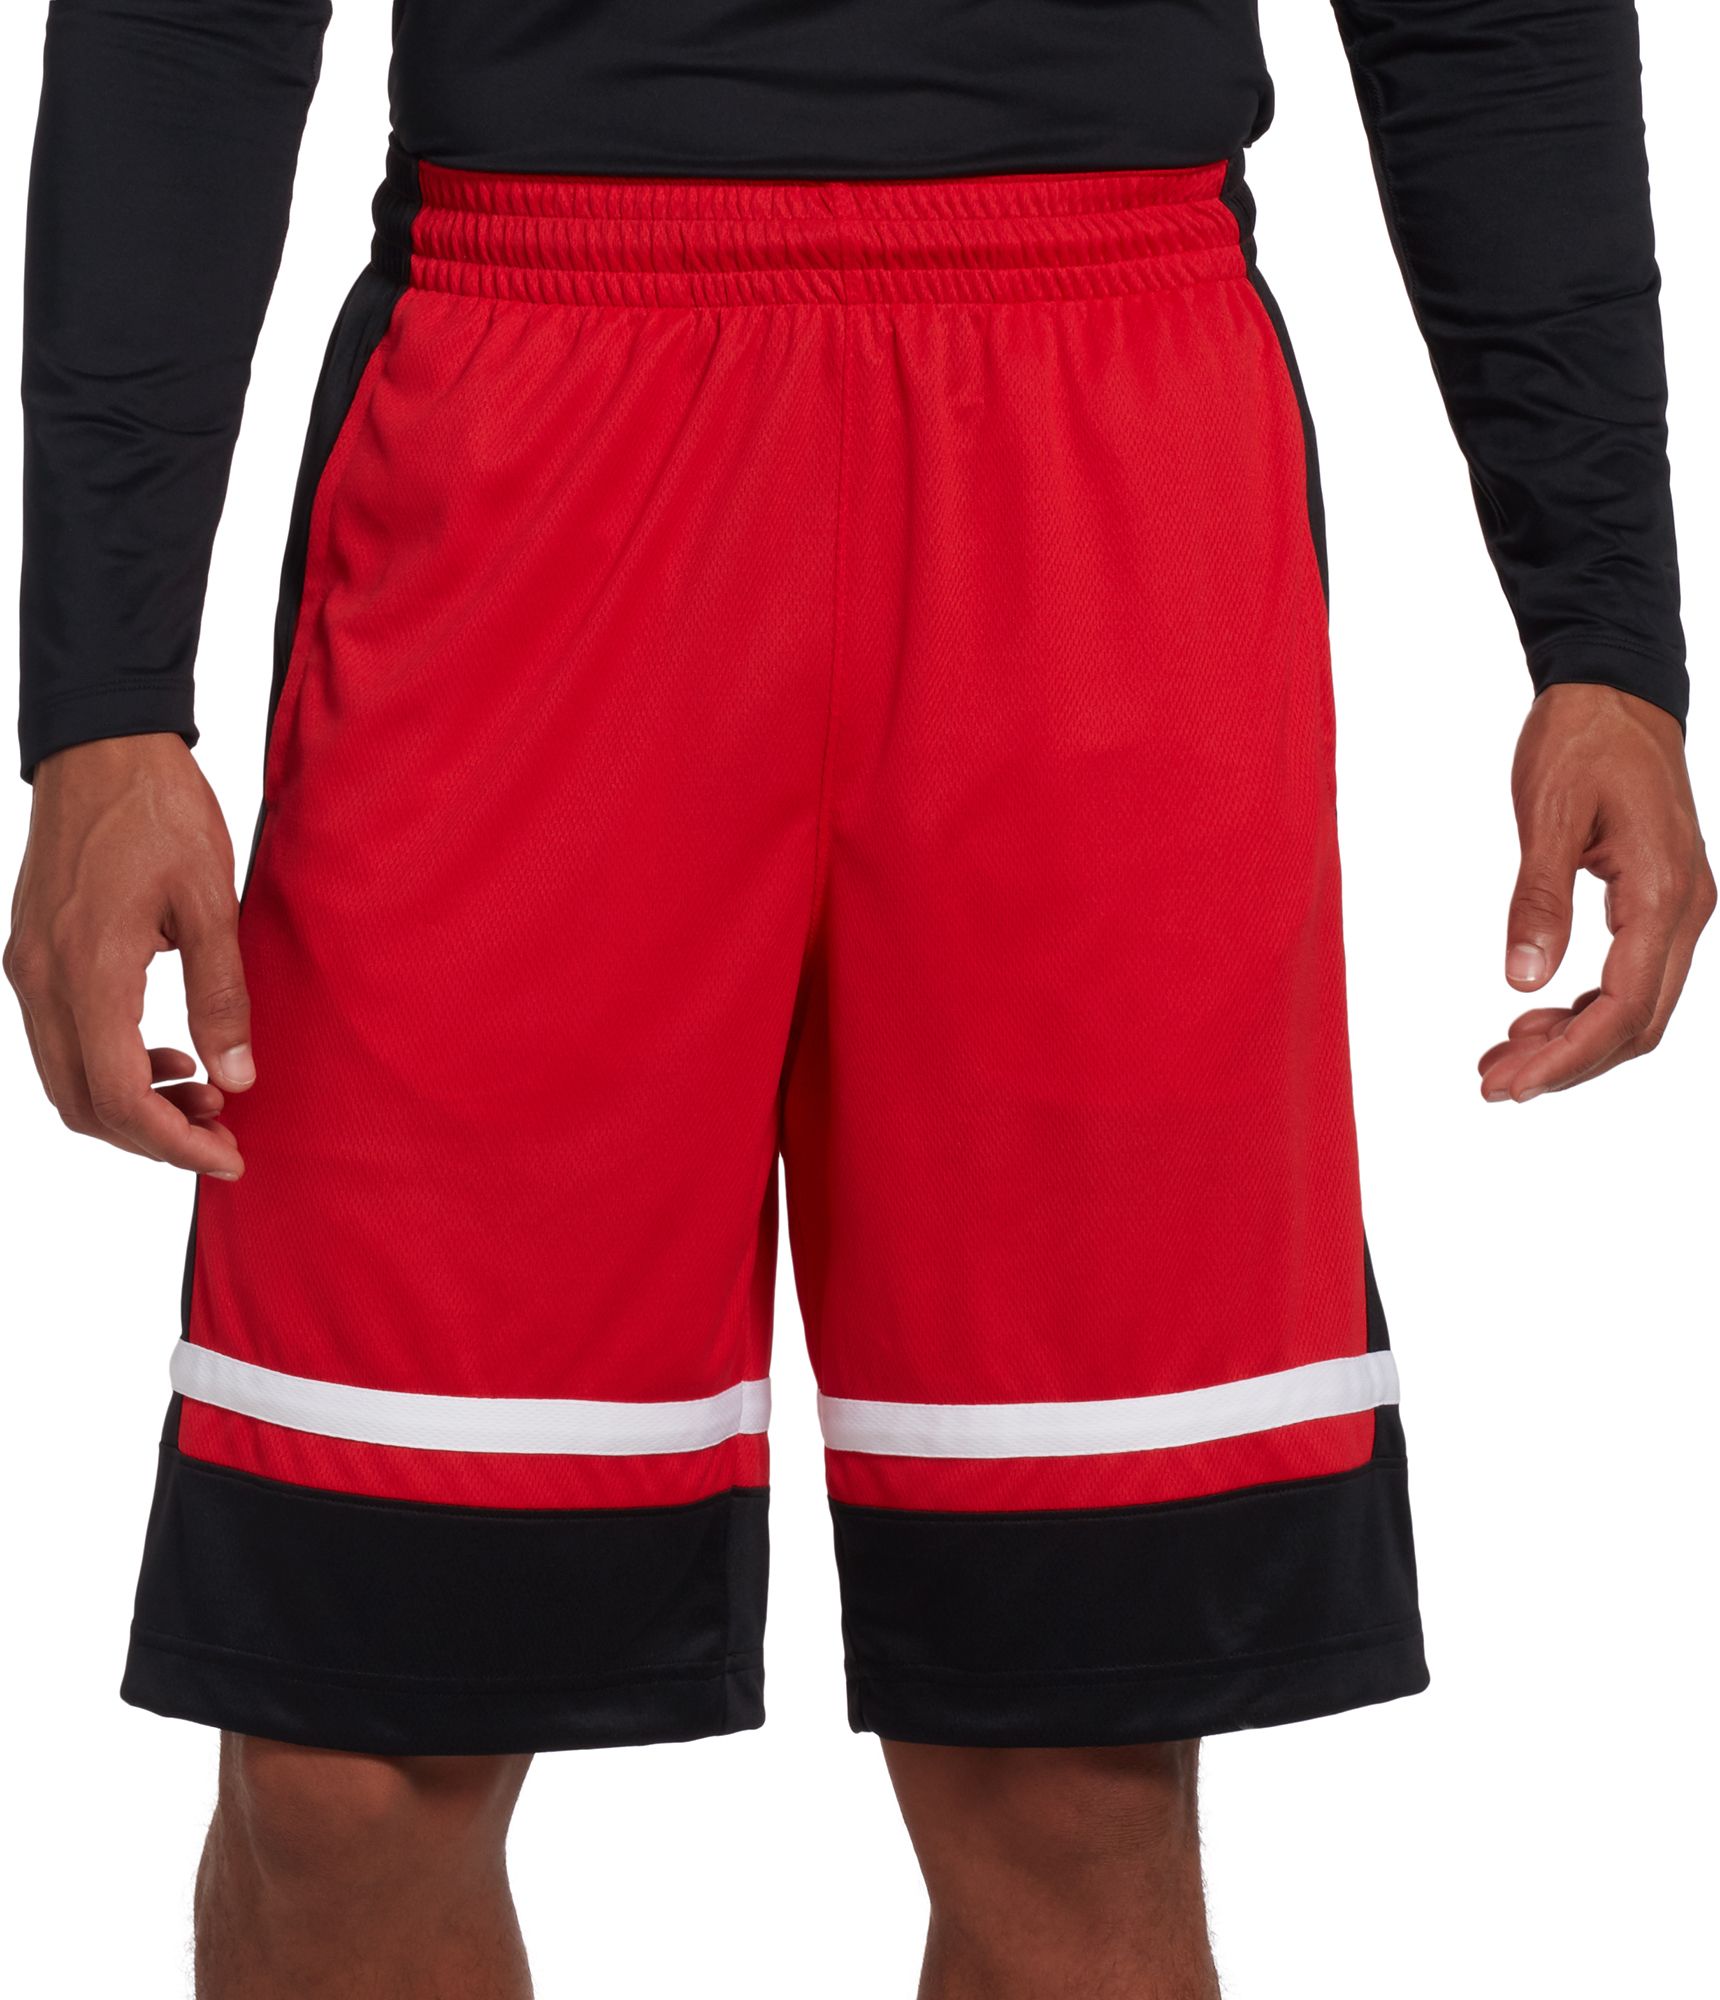 Nike Men's Dri-FIT Elite Basketball Shorts - .97 - .97